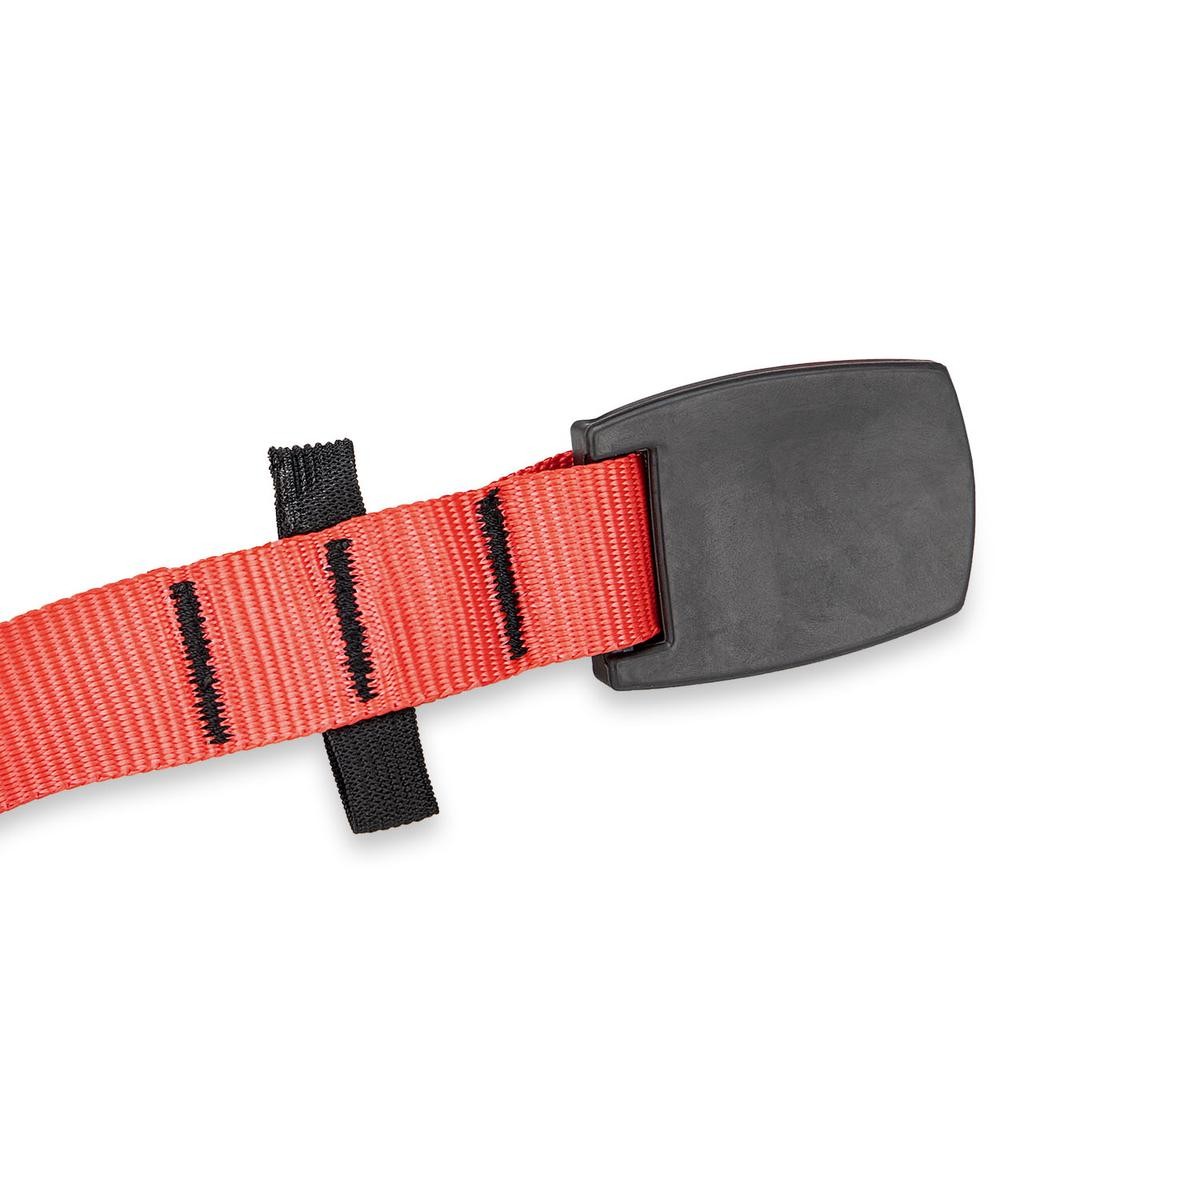 HEYNER 880250 Winch strap black, red, 2.5 m, 25 mm, 200 kg